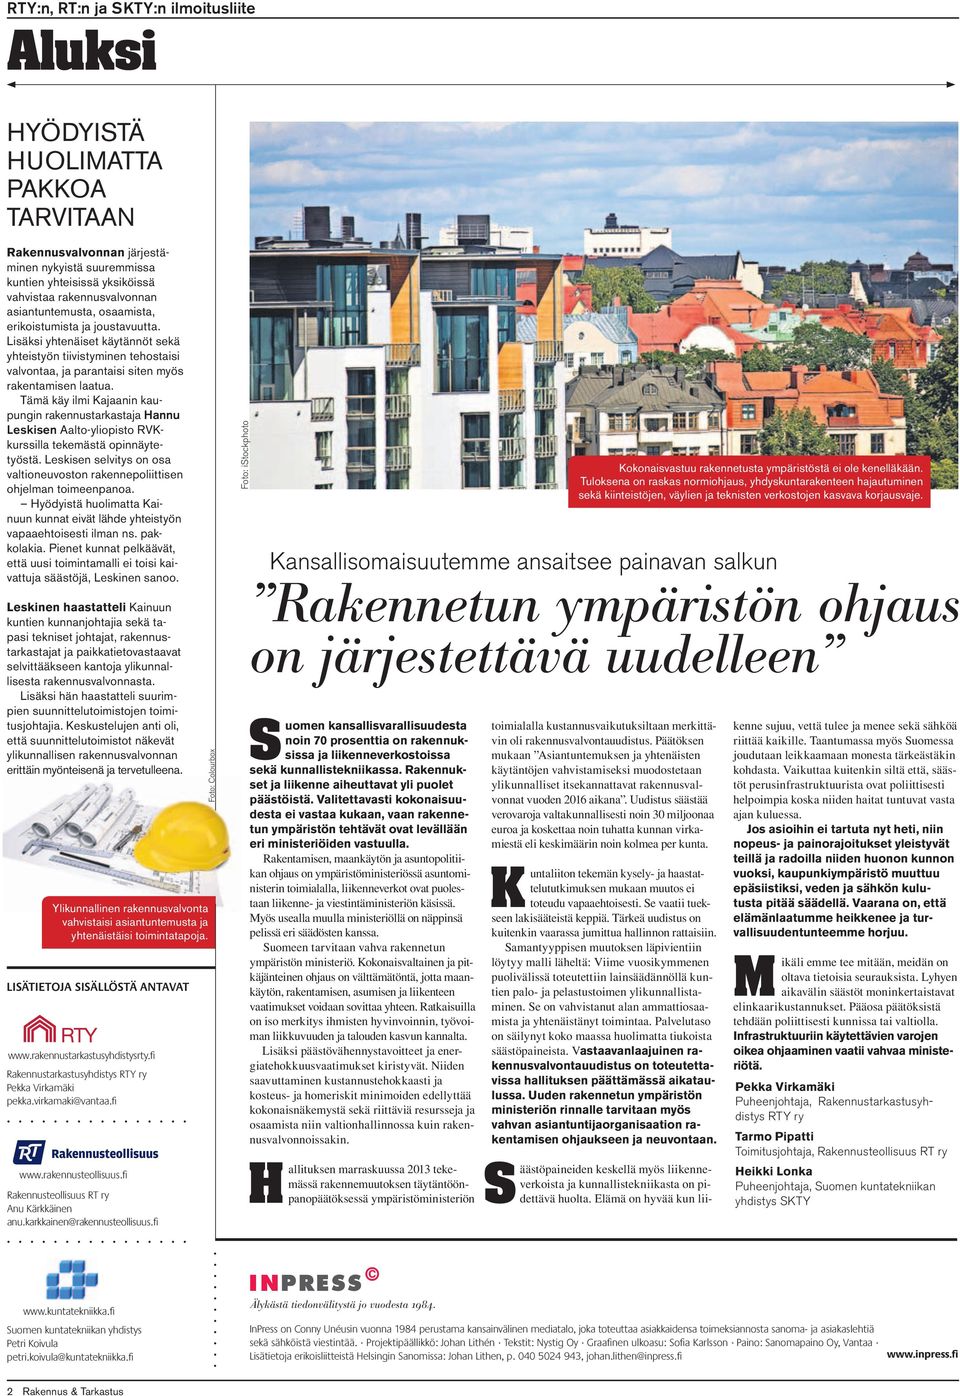 Tämä käy ilmi Kajaanin kaupungin rakennustarkastaja Hannu Leskisen Aalto-yliopisto RVKkurssilla tekemästä opinnäytetyöstä.